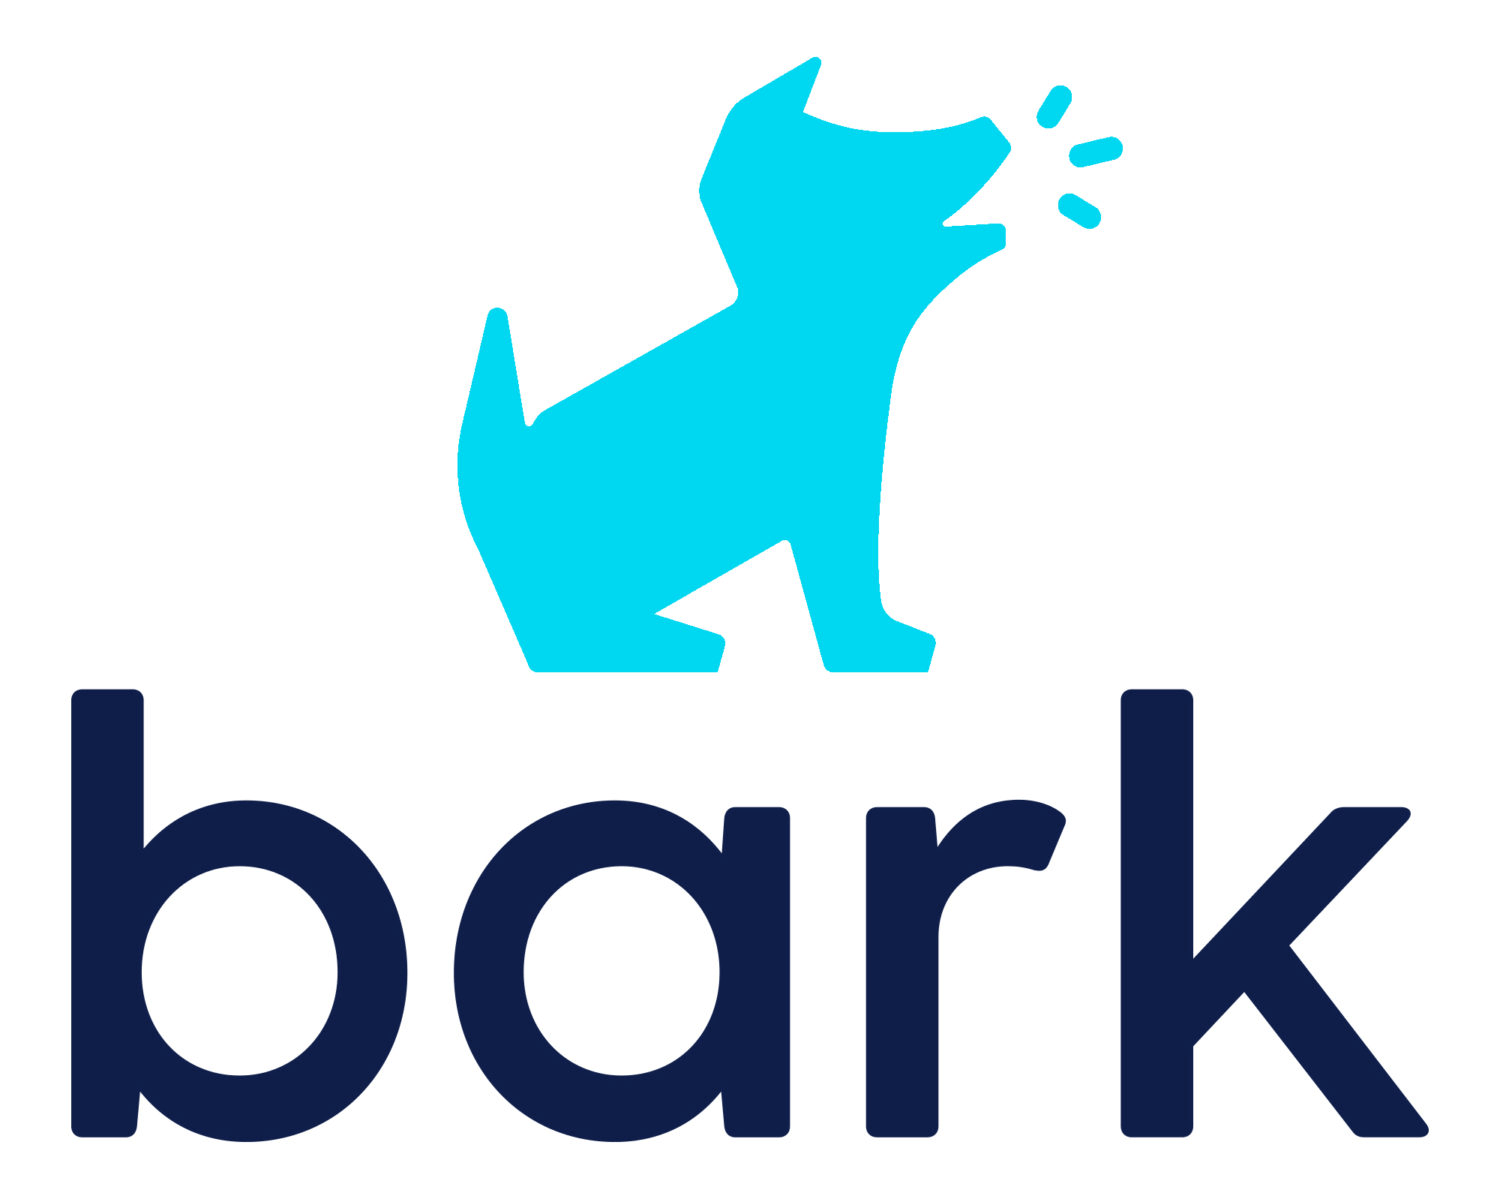 bark parental control app review